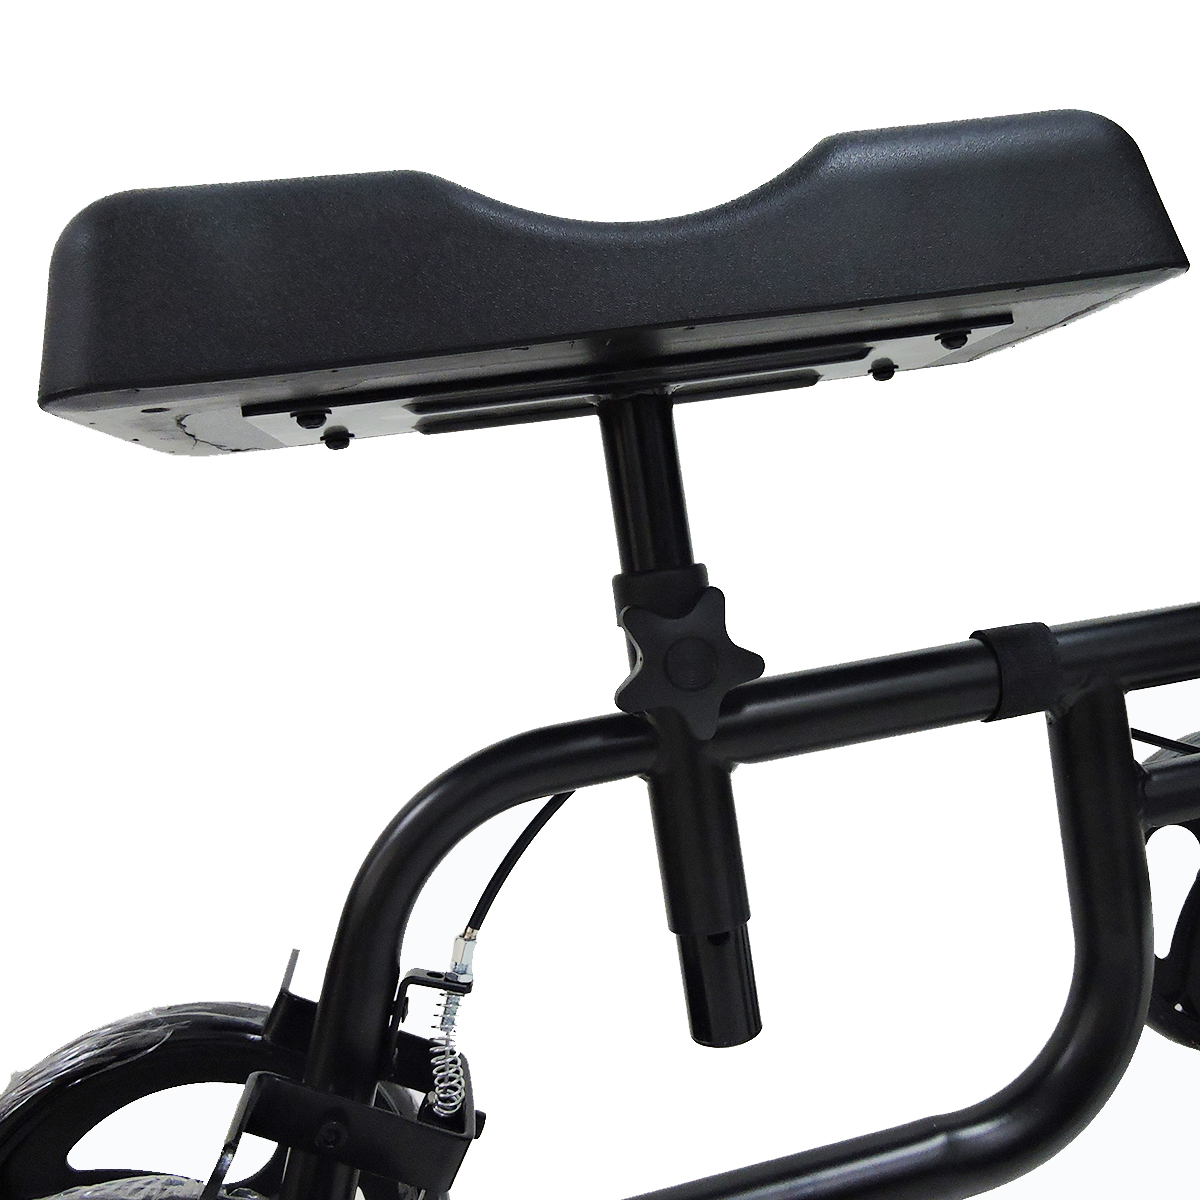 Mobility-Knee-Walker-Scooter-Roller-Crutch-Leg-Steerable-Foldable-Design-Adjustable-Height-Adjustabl-1940054-11